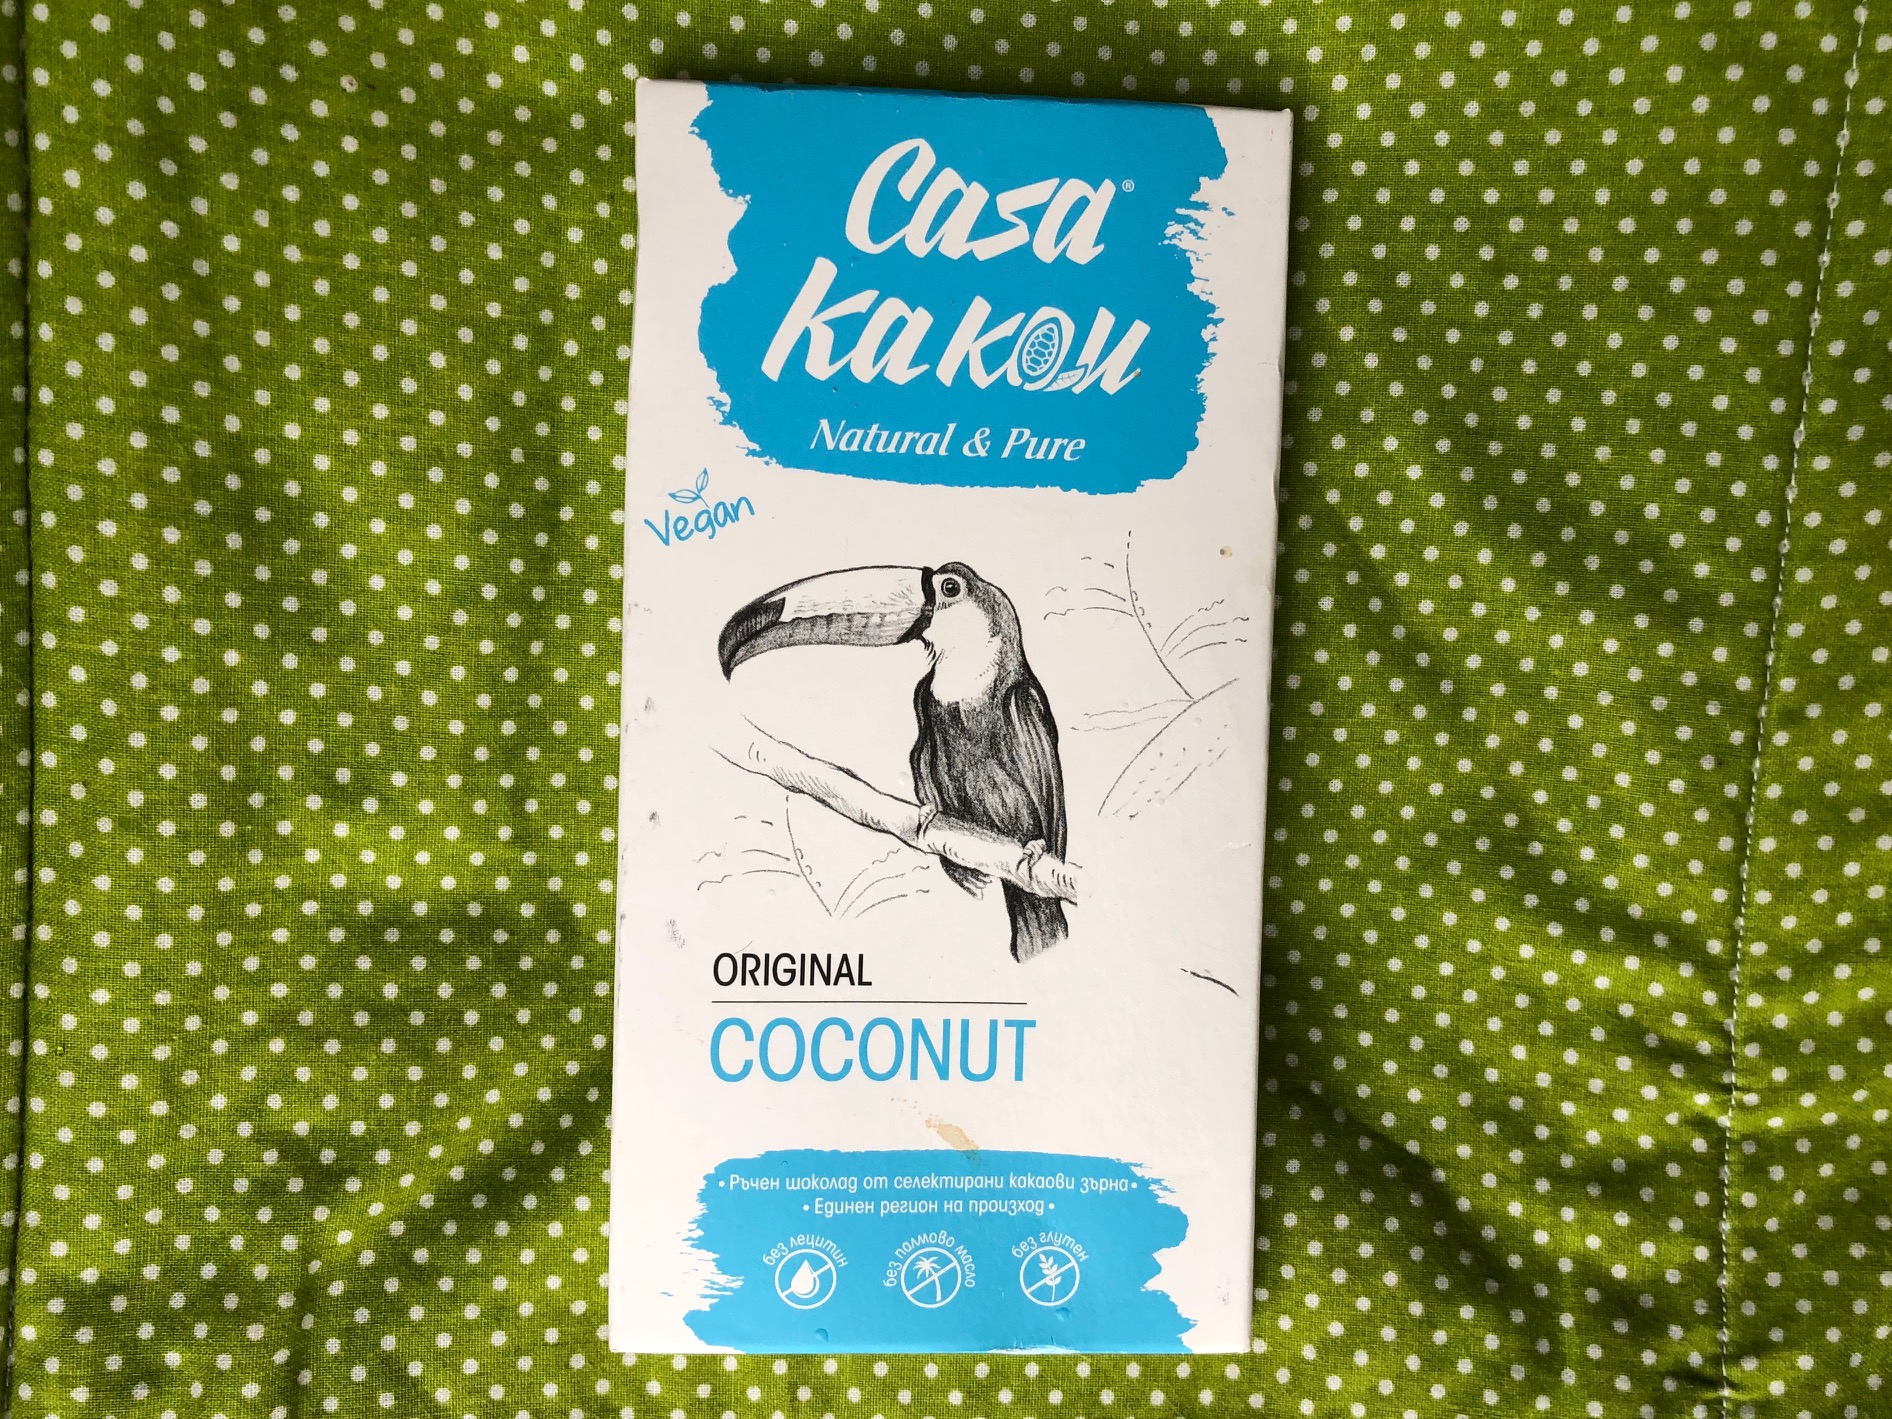 Casa-Kakau-Original-Coconut